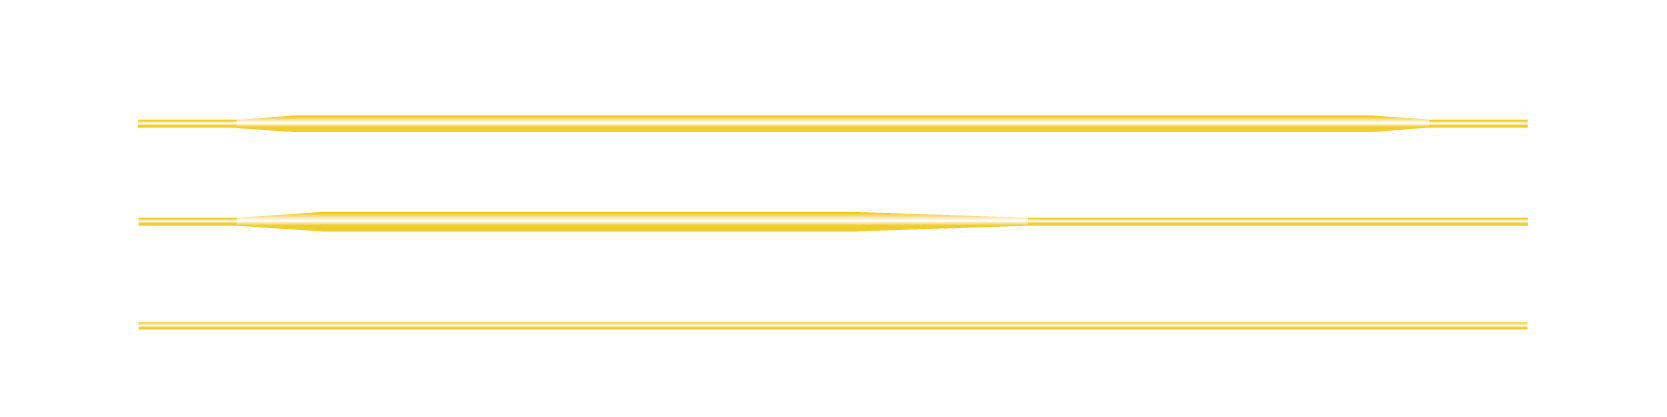 Fliegenschnur WF weight Forward DT Double Taper LL Parallel Line Running Line